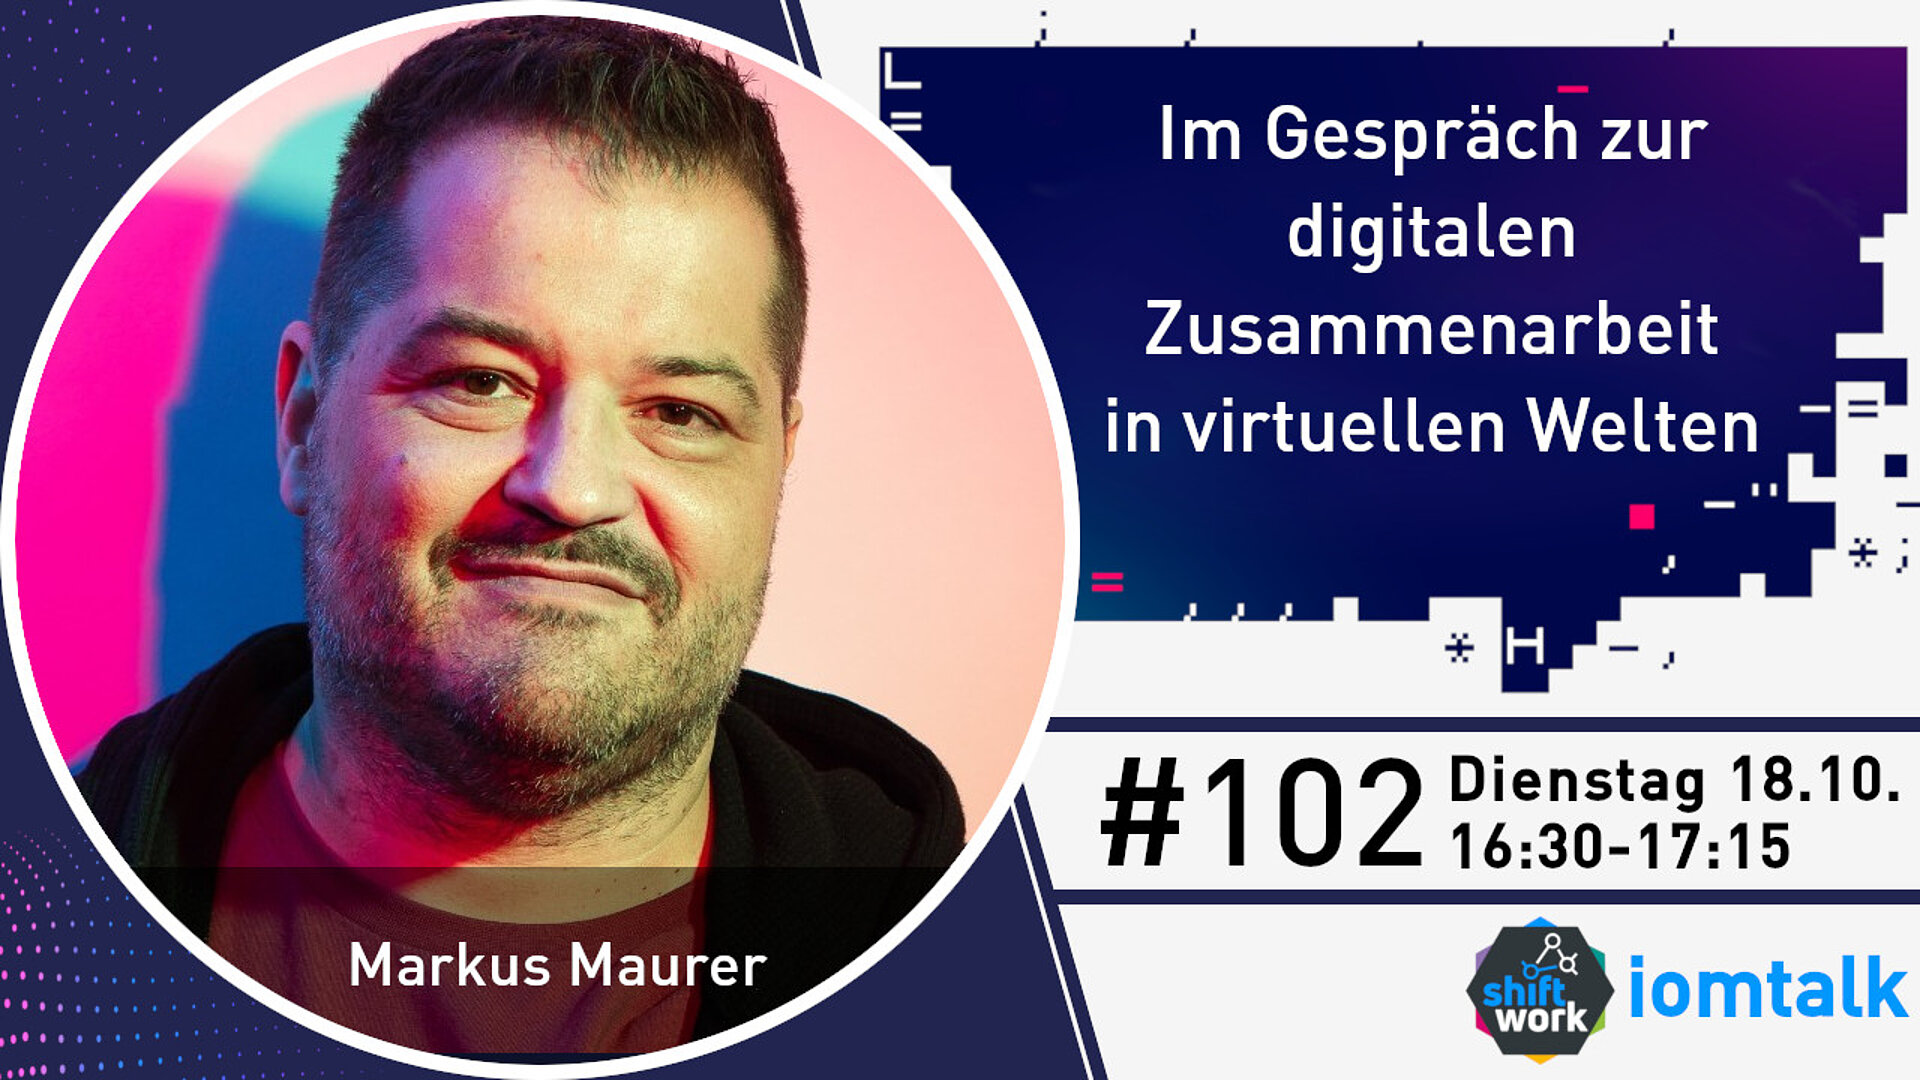 Im Gespräch mit Markus Maurer zur digitalen Zusammenarbeit in virtuellen Welten